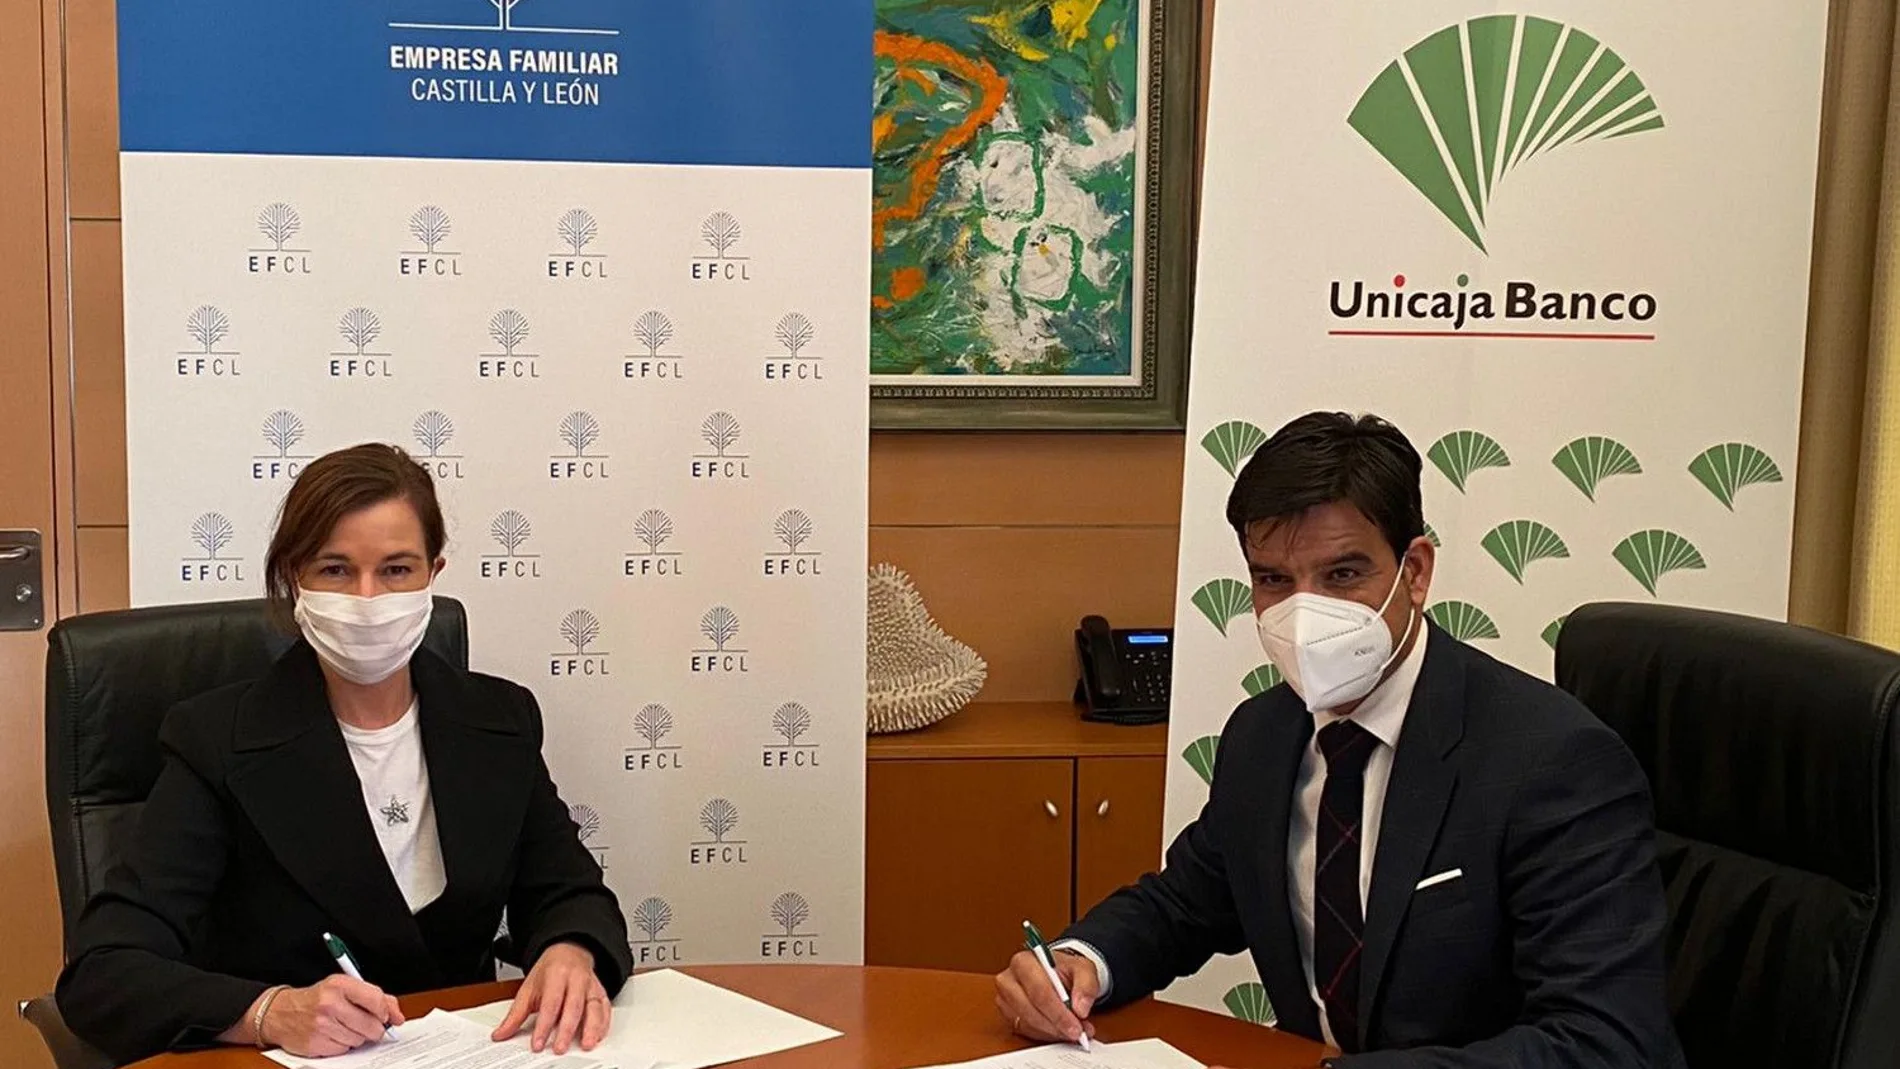 La presidenta de Empresa Familiar Castilla y León, Rocío Hervella, y el Director Territorial de UnicajaBanco en Valladolid, Manuel Rubio, firman el acuerdo